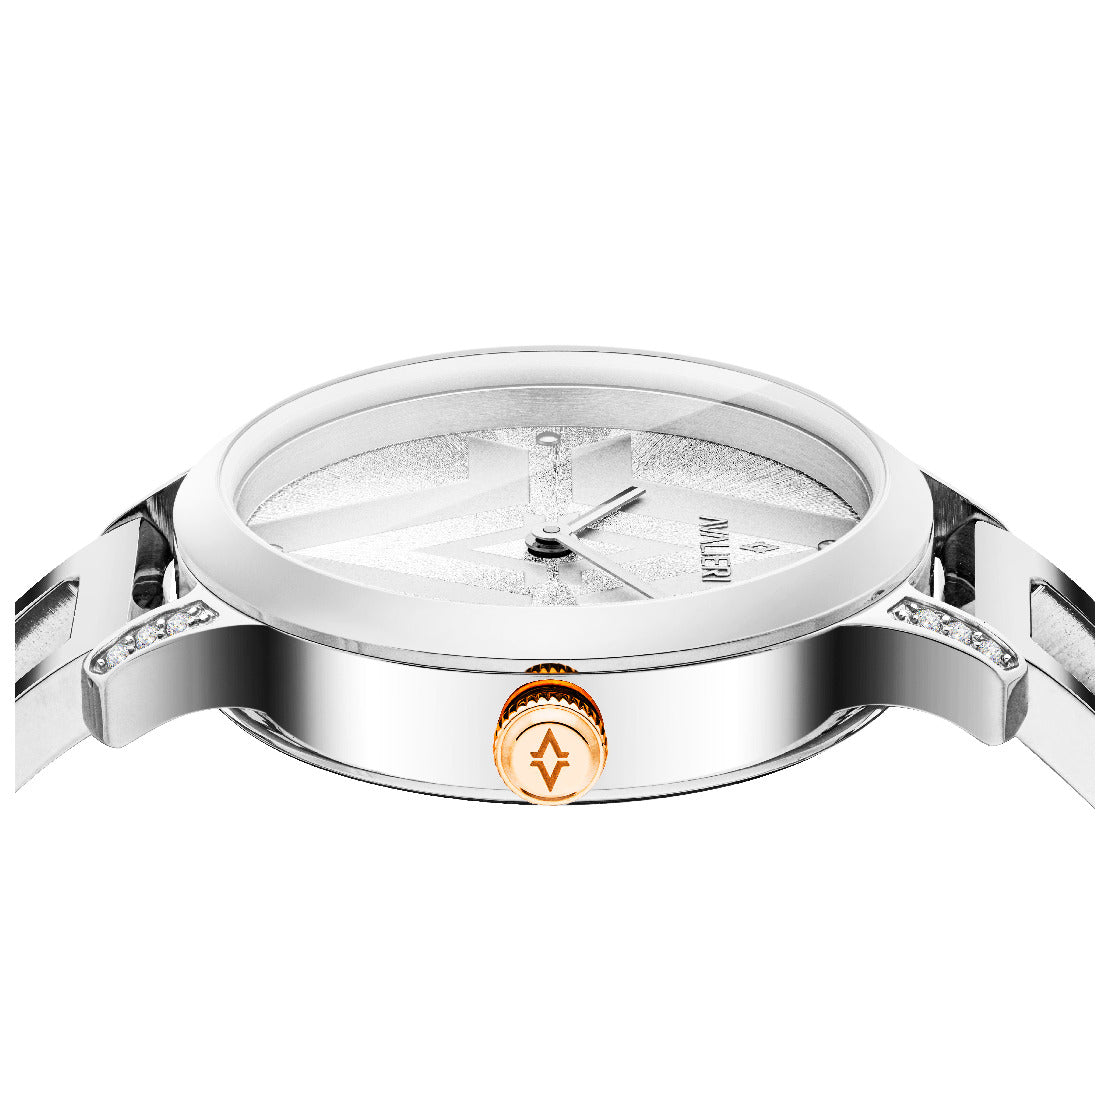 Avalieri Women's Quartz White Dial Watch - AV-2500B